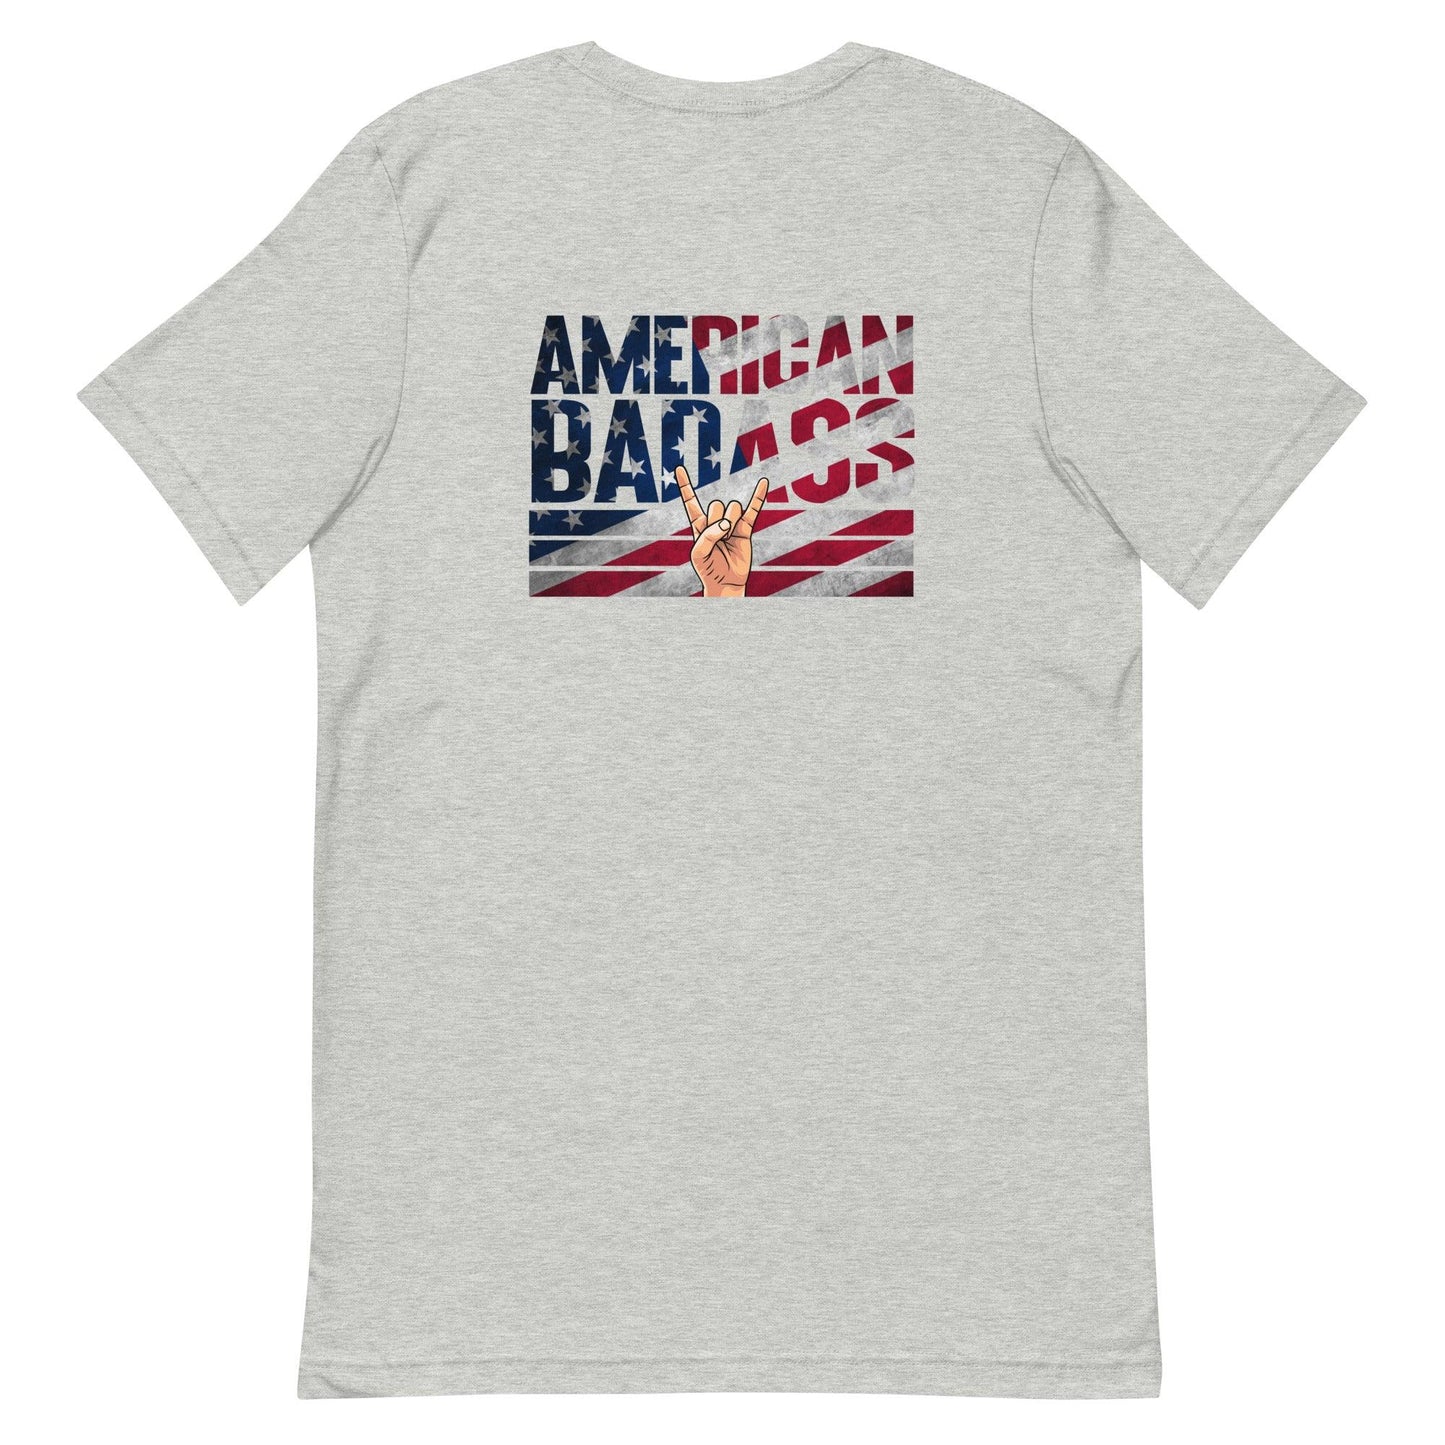 Clay Guida "American Badass" T-Shirt - Fan Arch